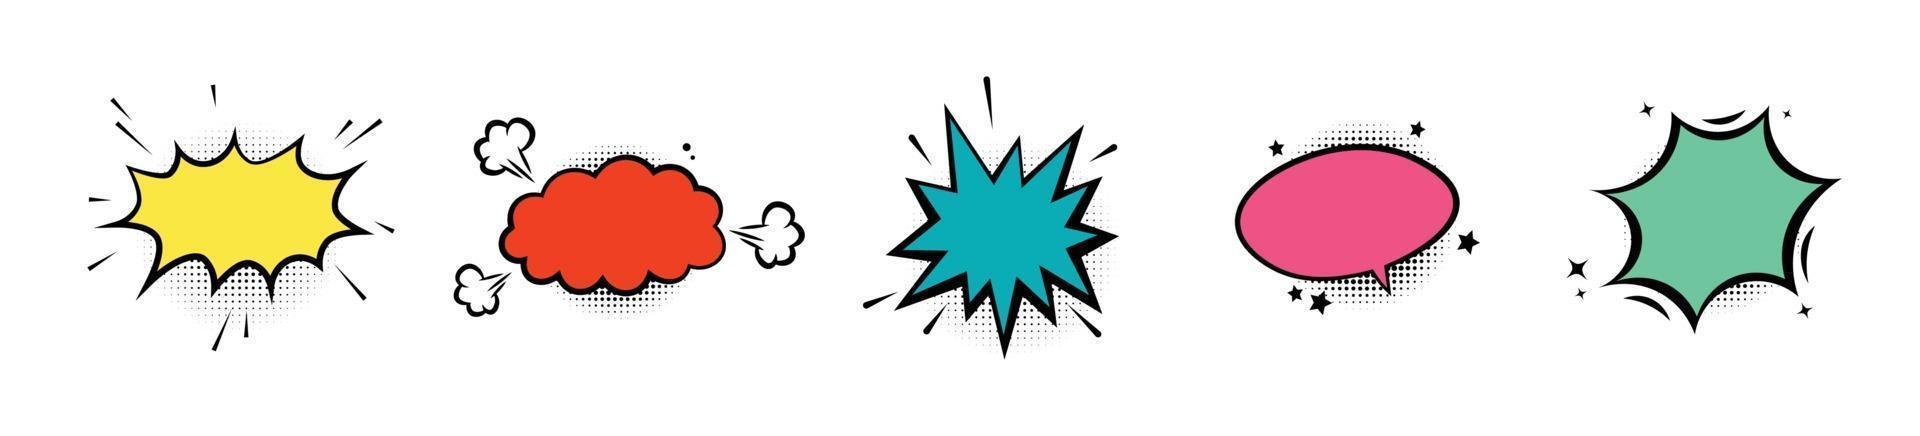 Chat burbuja estilo cómico puntos de semitono vintage conjunto de ilustraciones vectoriales vector